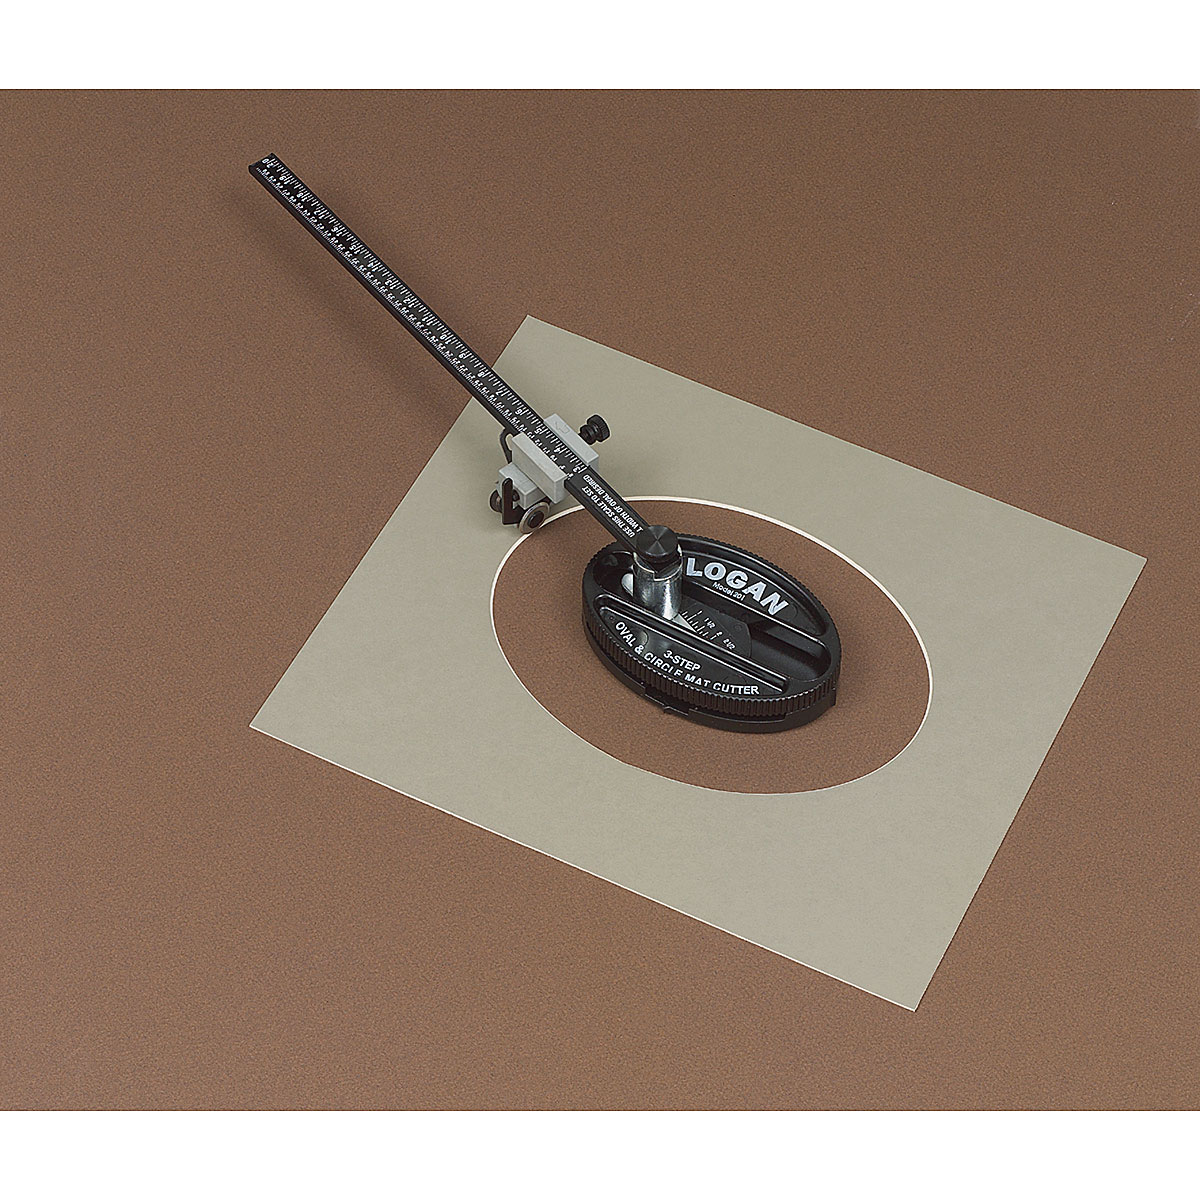 Logan 201 Mat Cutter Oval / Circle – Jerrys Artist Outlet